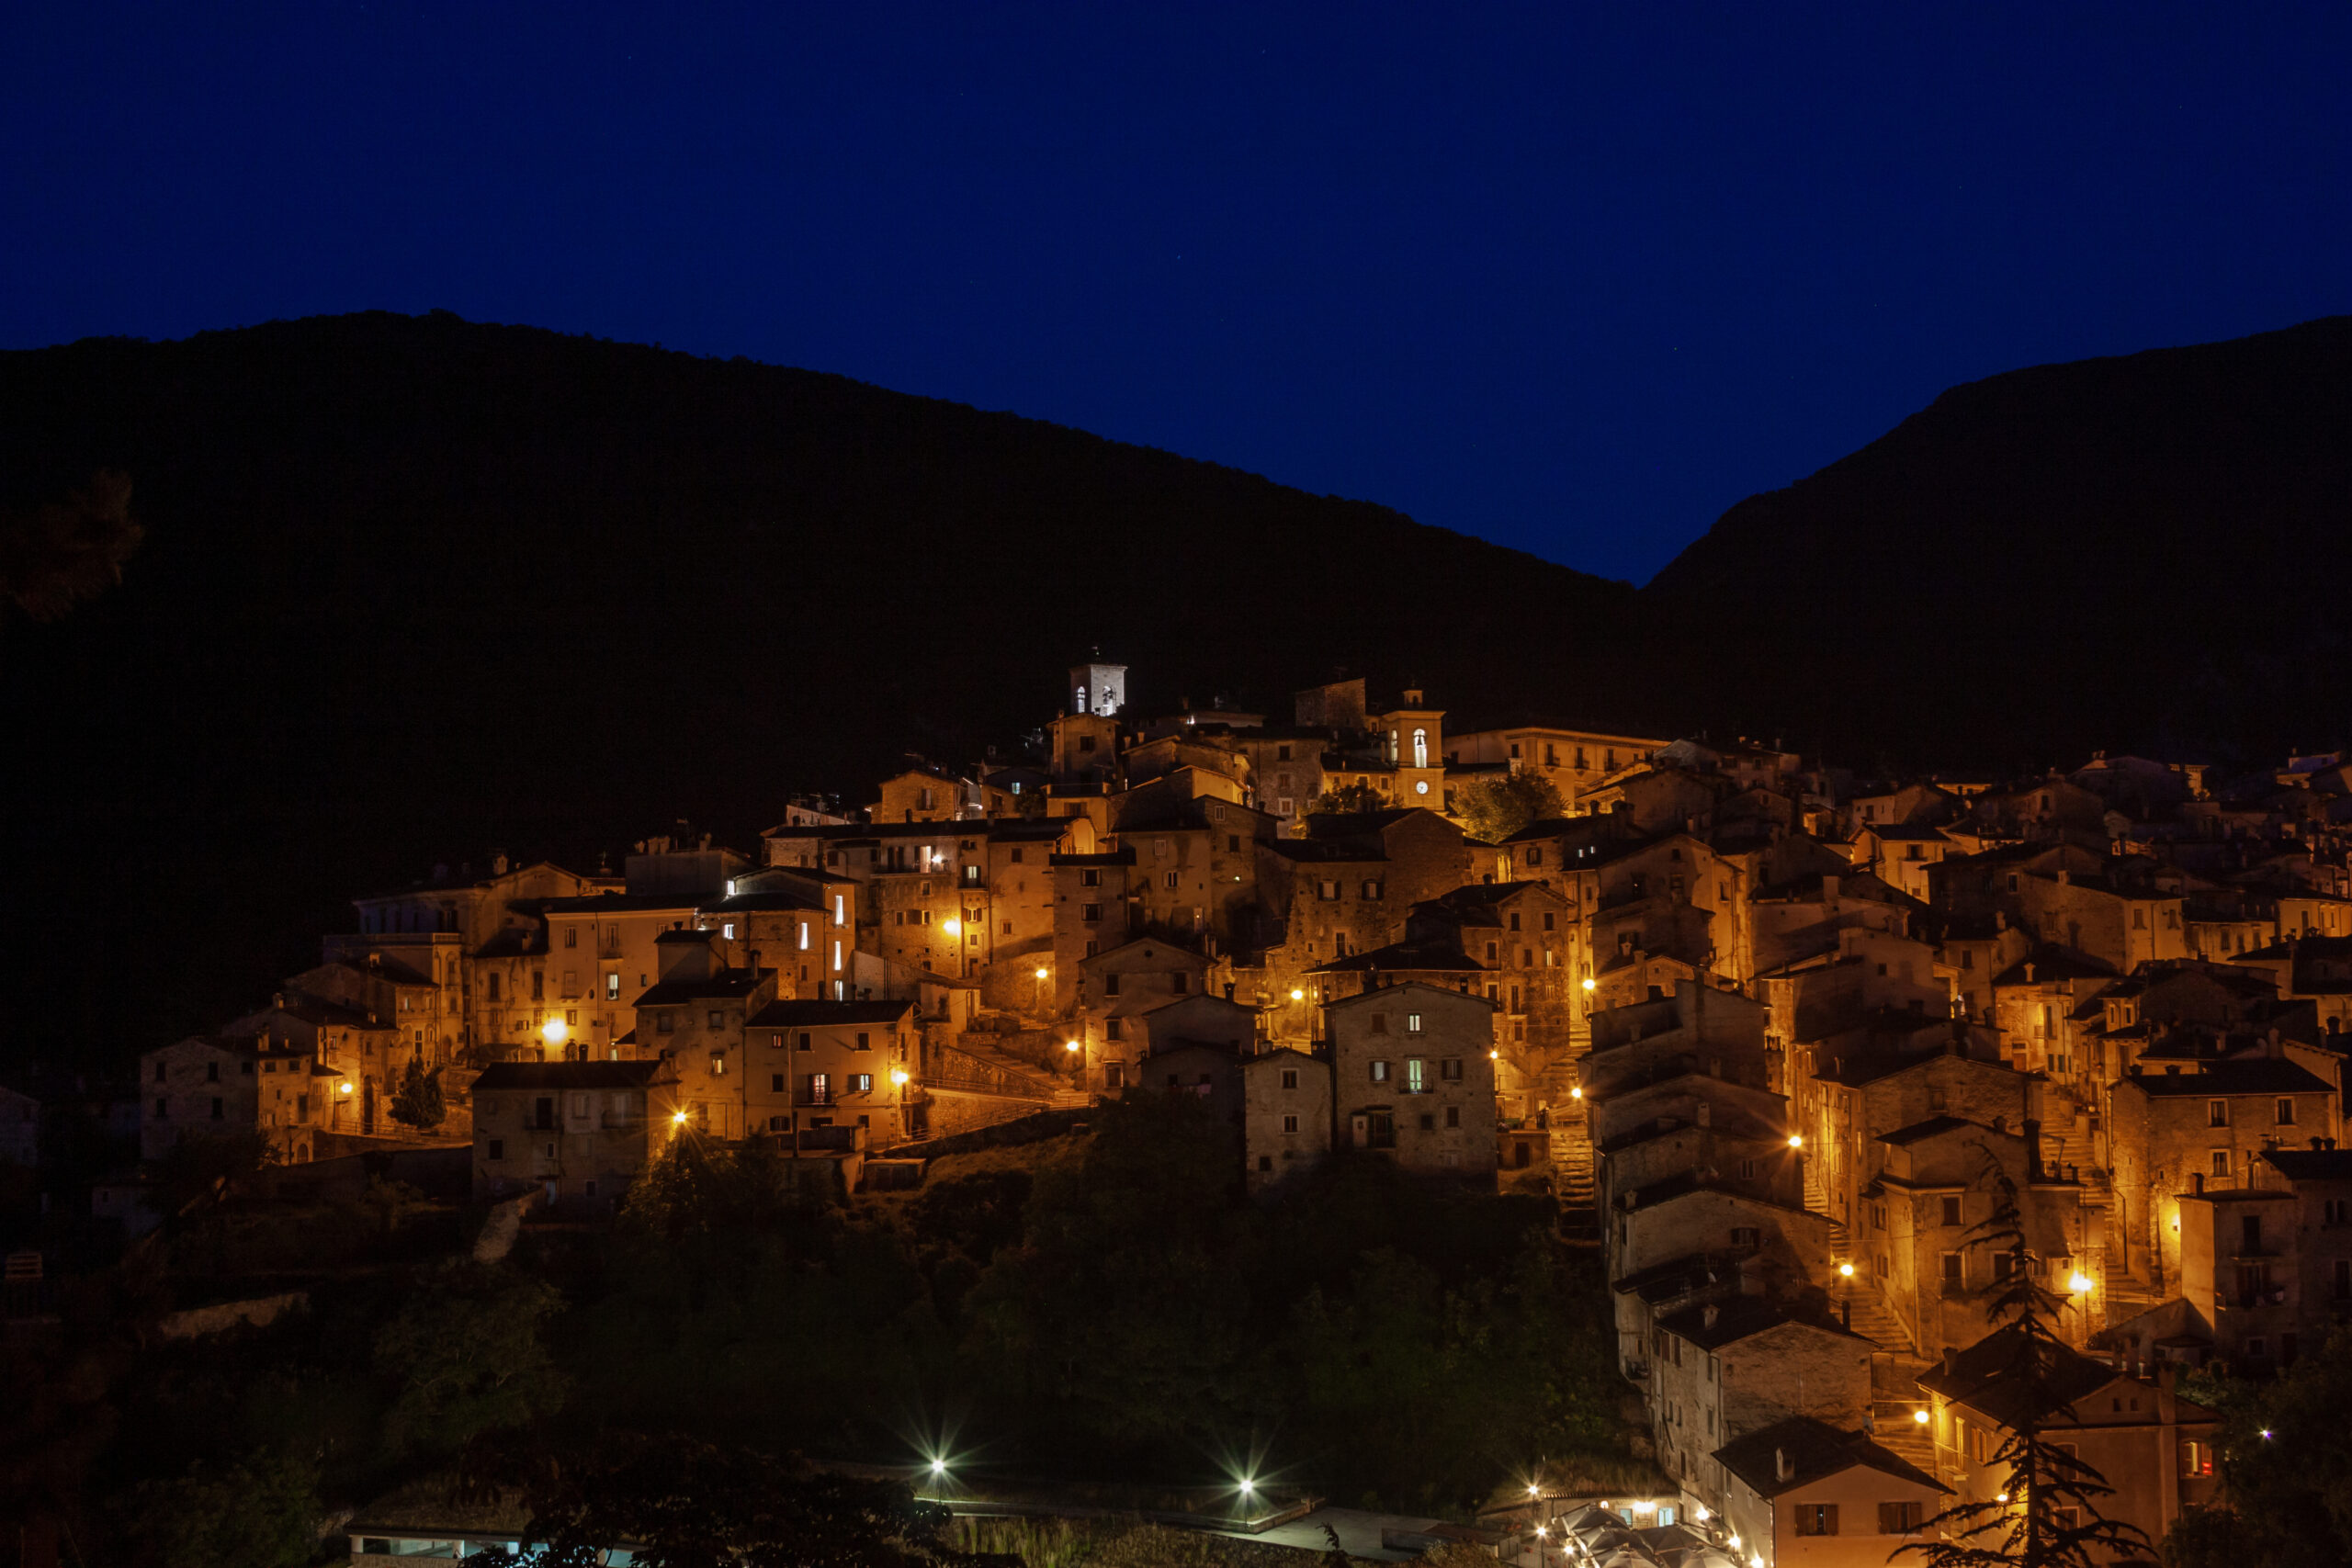 fotografia del bellissimo borgo abruzzese di Scanno, corso di fotografia urbana notturna con cavalletto